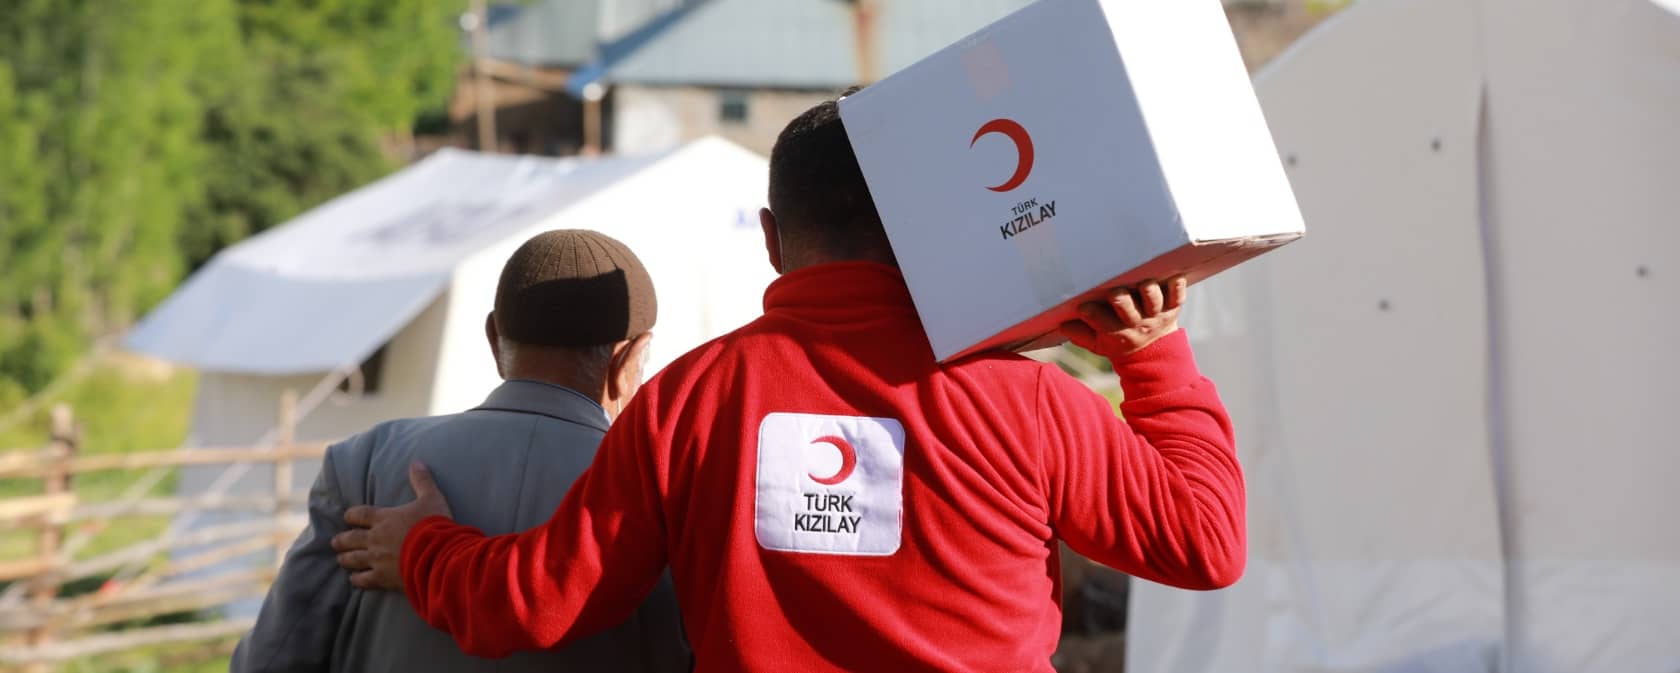 منذ الأزمة السورية تواصل منظمة الهلال الأحمر تقديم المساعدات للمحتاجين